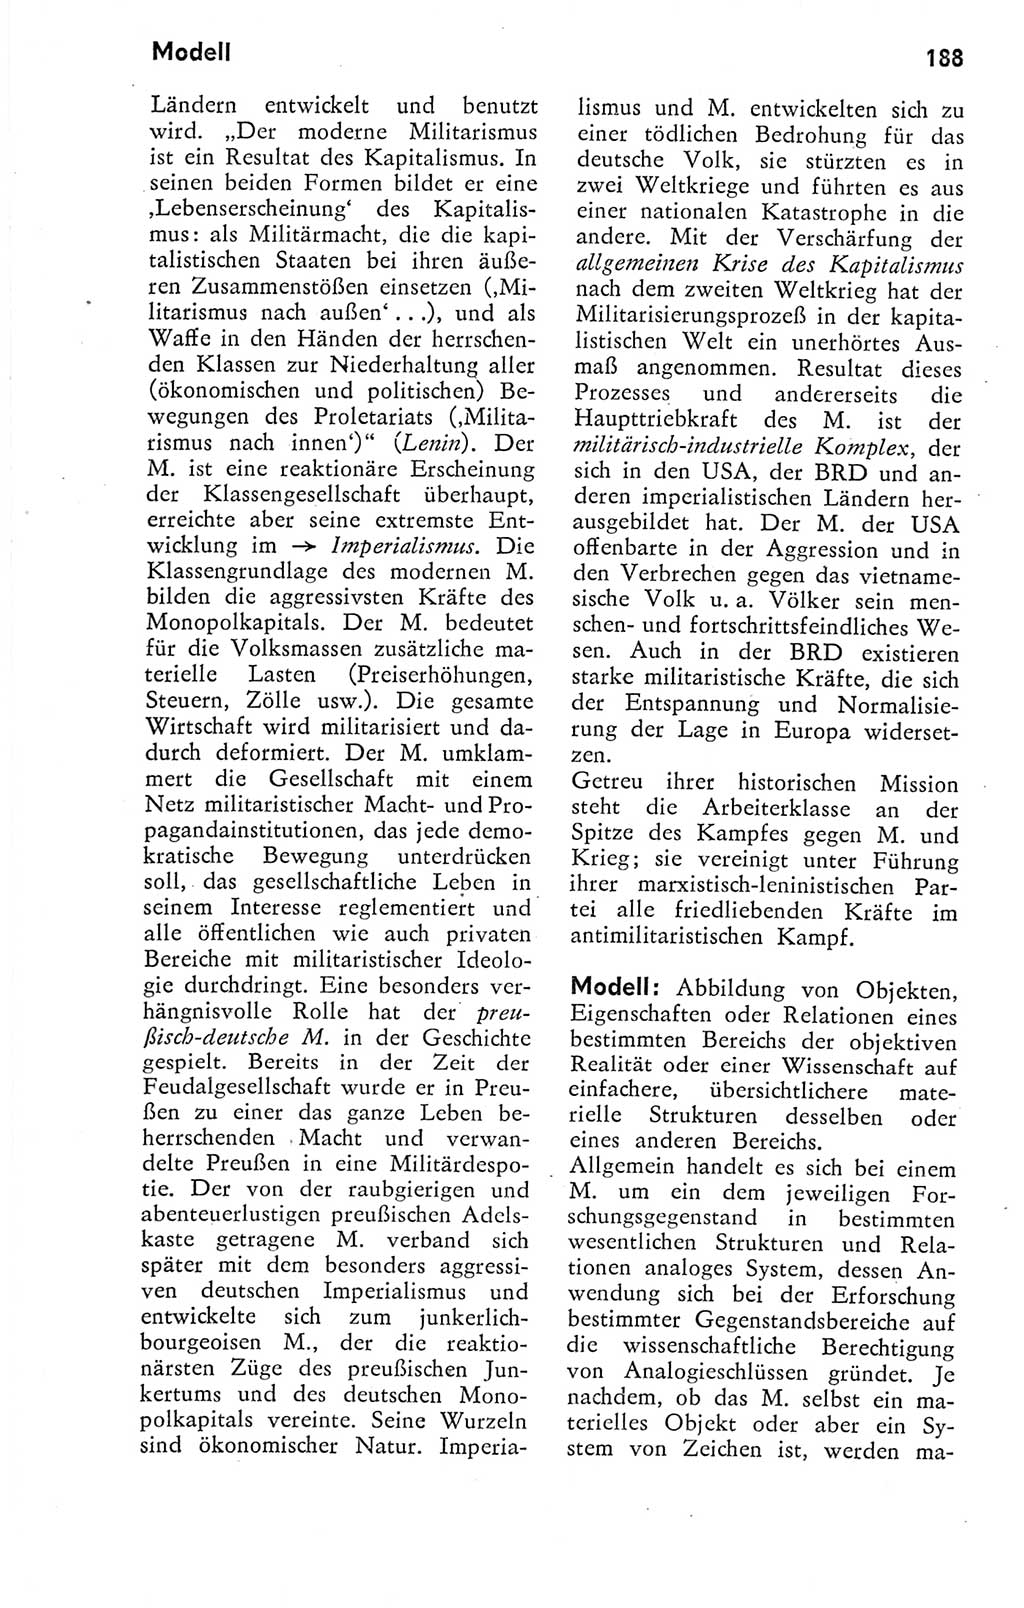 Kleines Wörterbuch der marxistisch-leninistischen Philosophie [Deutsche Demokratische Republik (DDR)] 1974, Seite 175 (Kl. Wb. ML Phil. DDR 1974, S. 175)